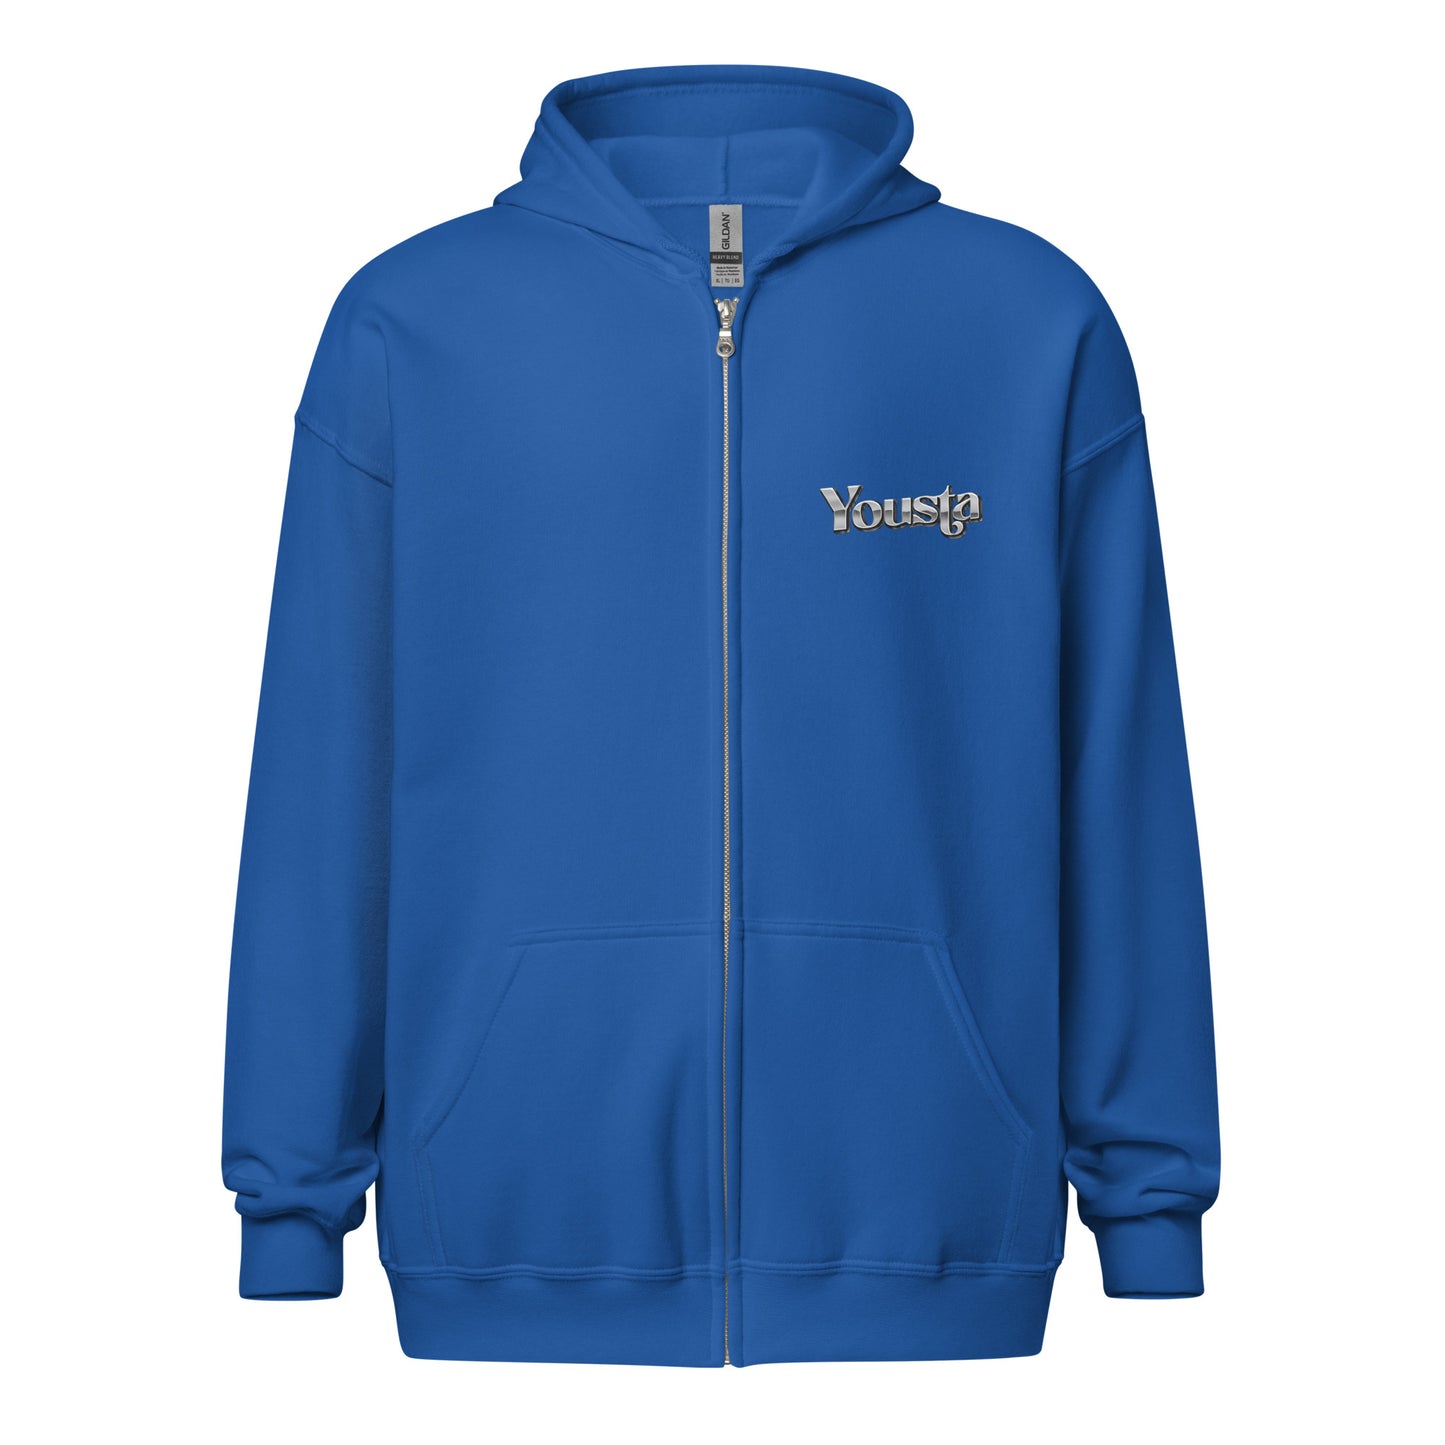 Adrian Van Graphic Unisex heavy blend zip hoodie